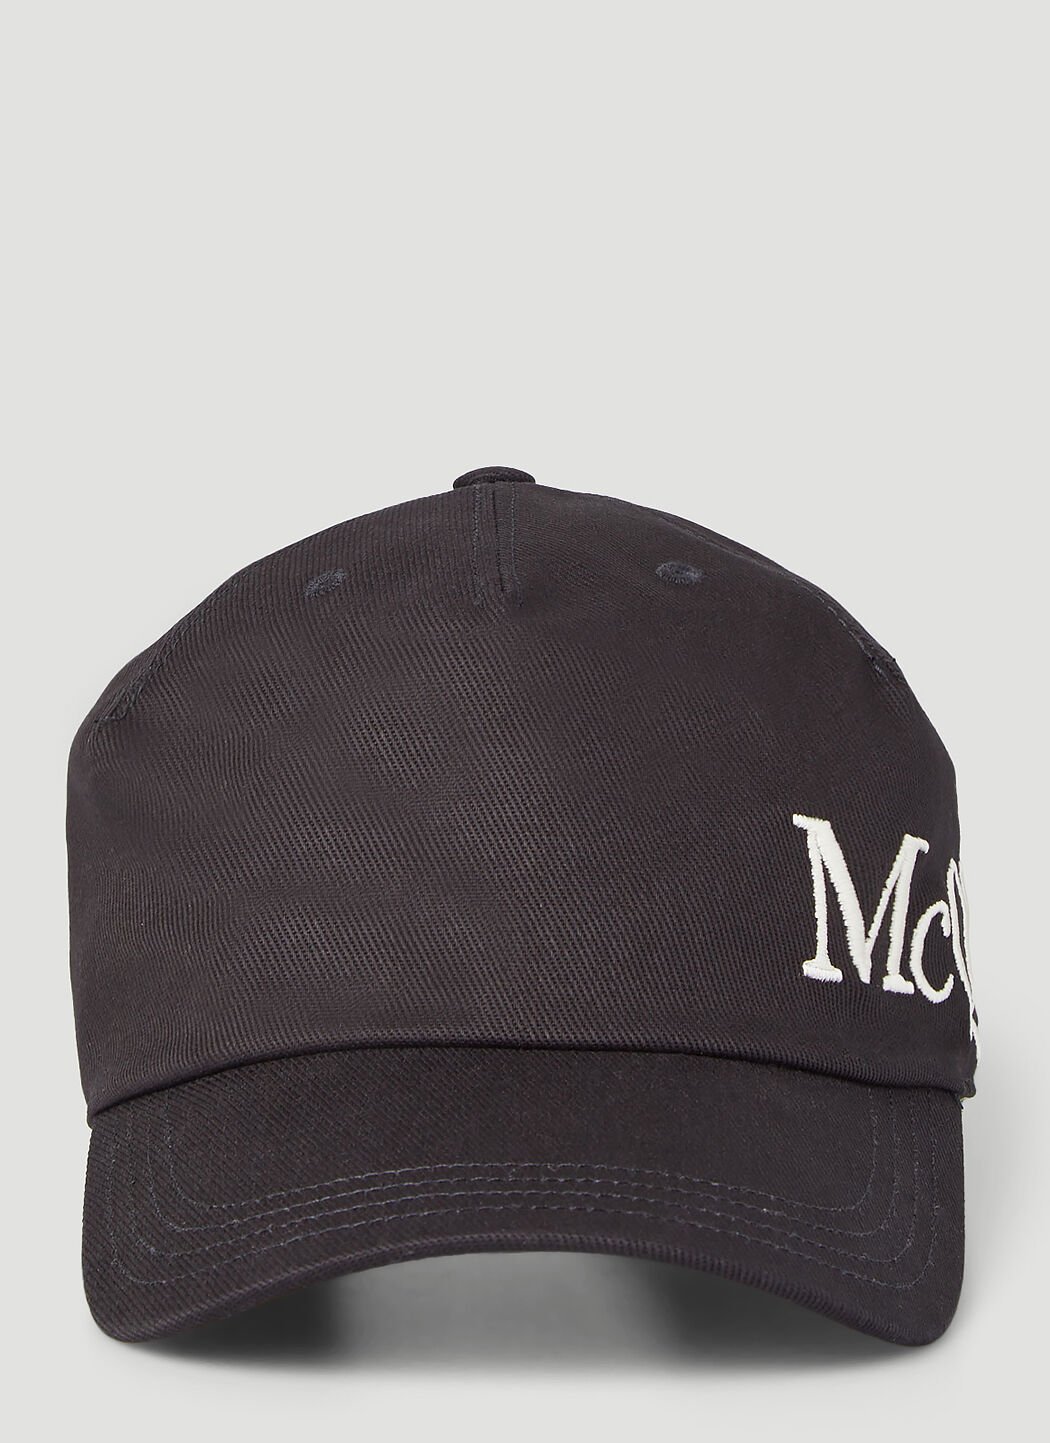 Balenciaga 刺绣徽标棒球帽 黑色 bcs0153001